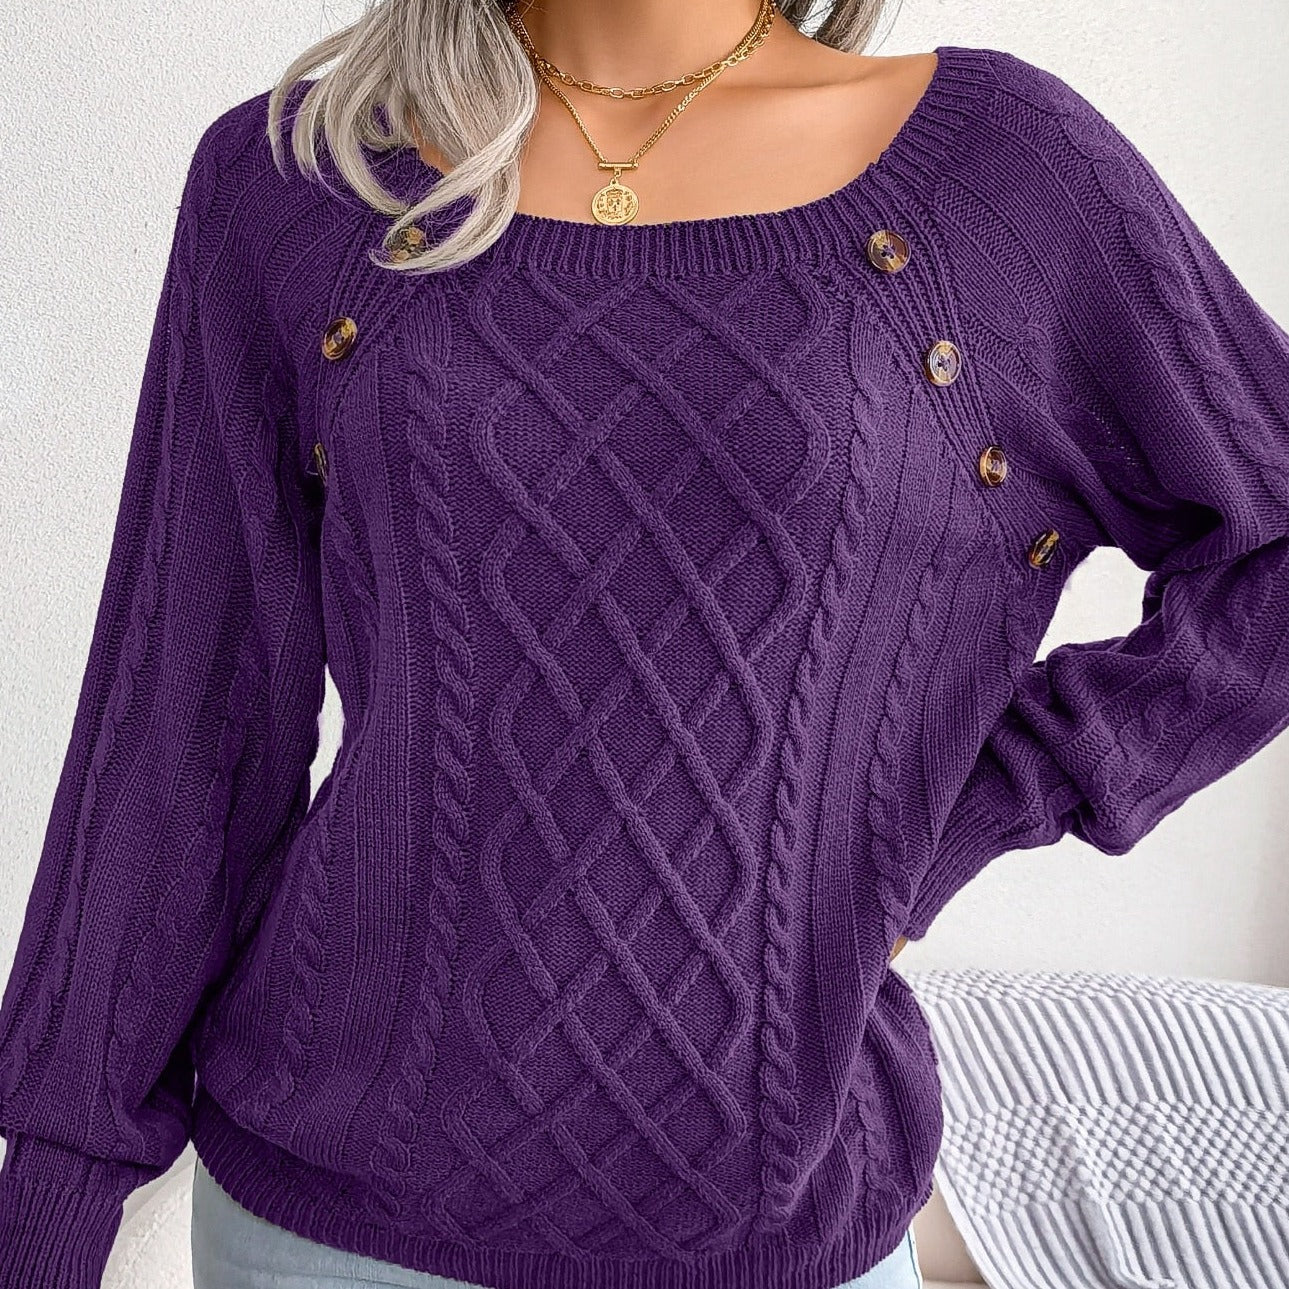 Linda - Stylischer Pullover